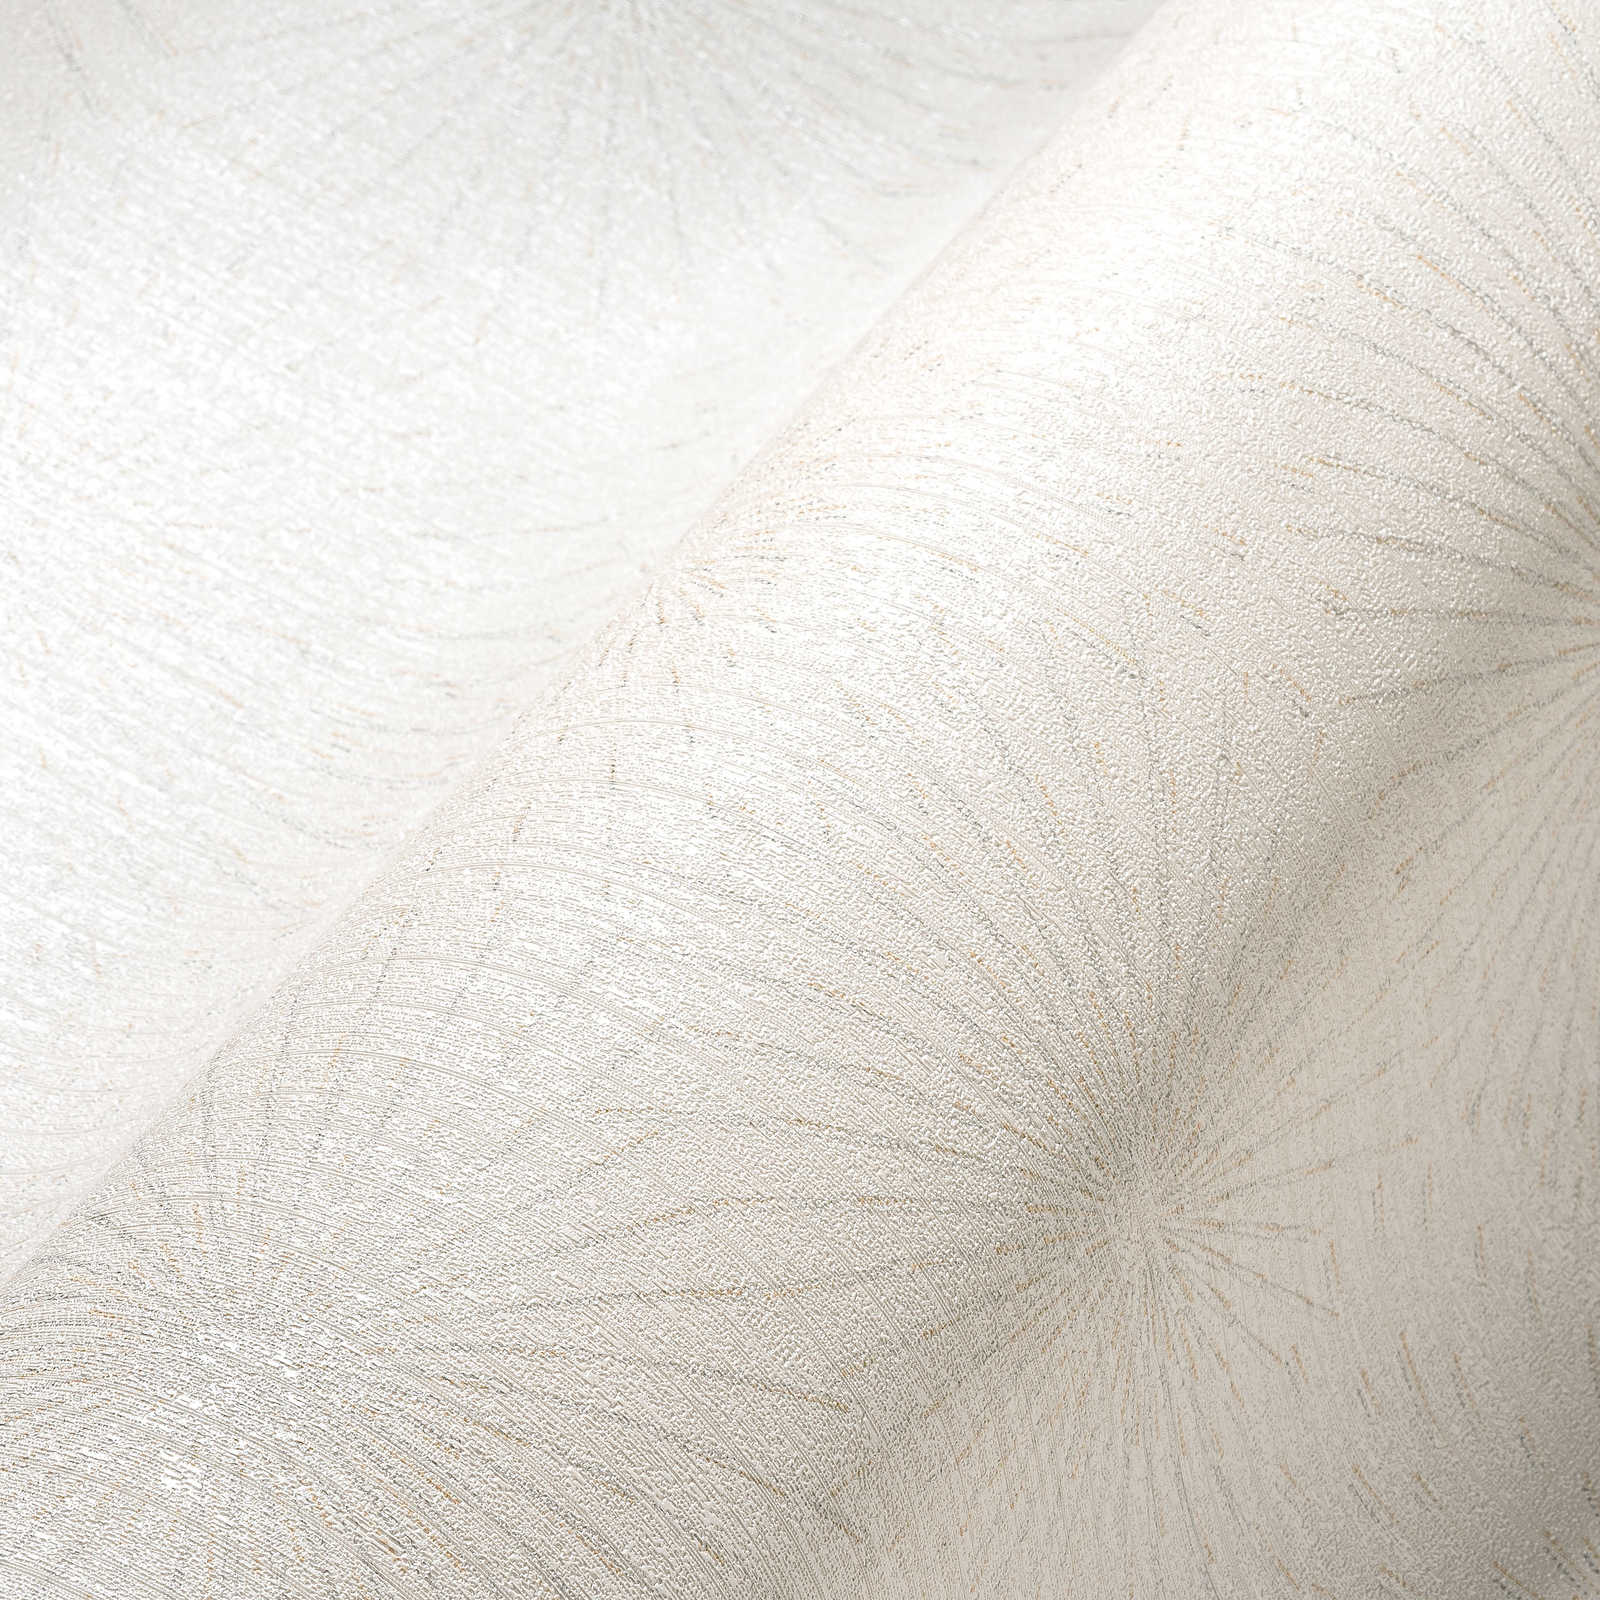             White wallpaper with retro metallic pattern Starburst - white
        